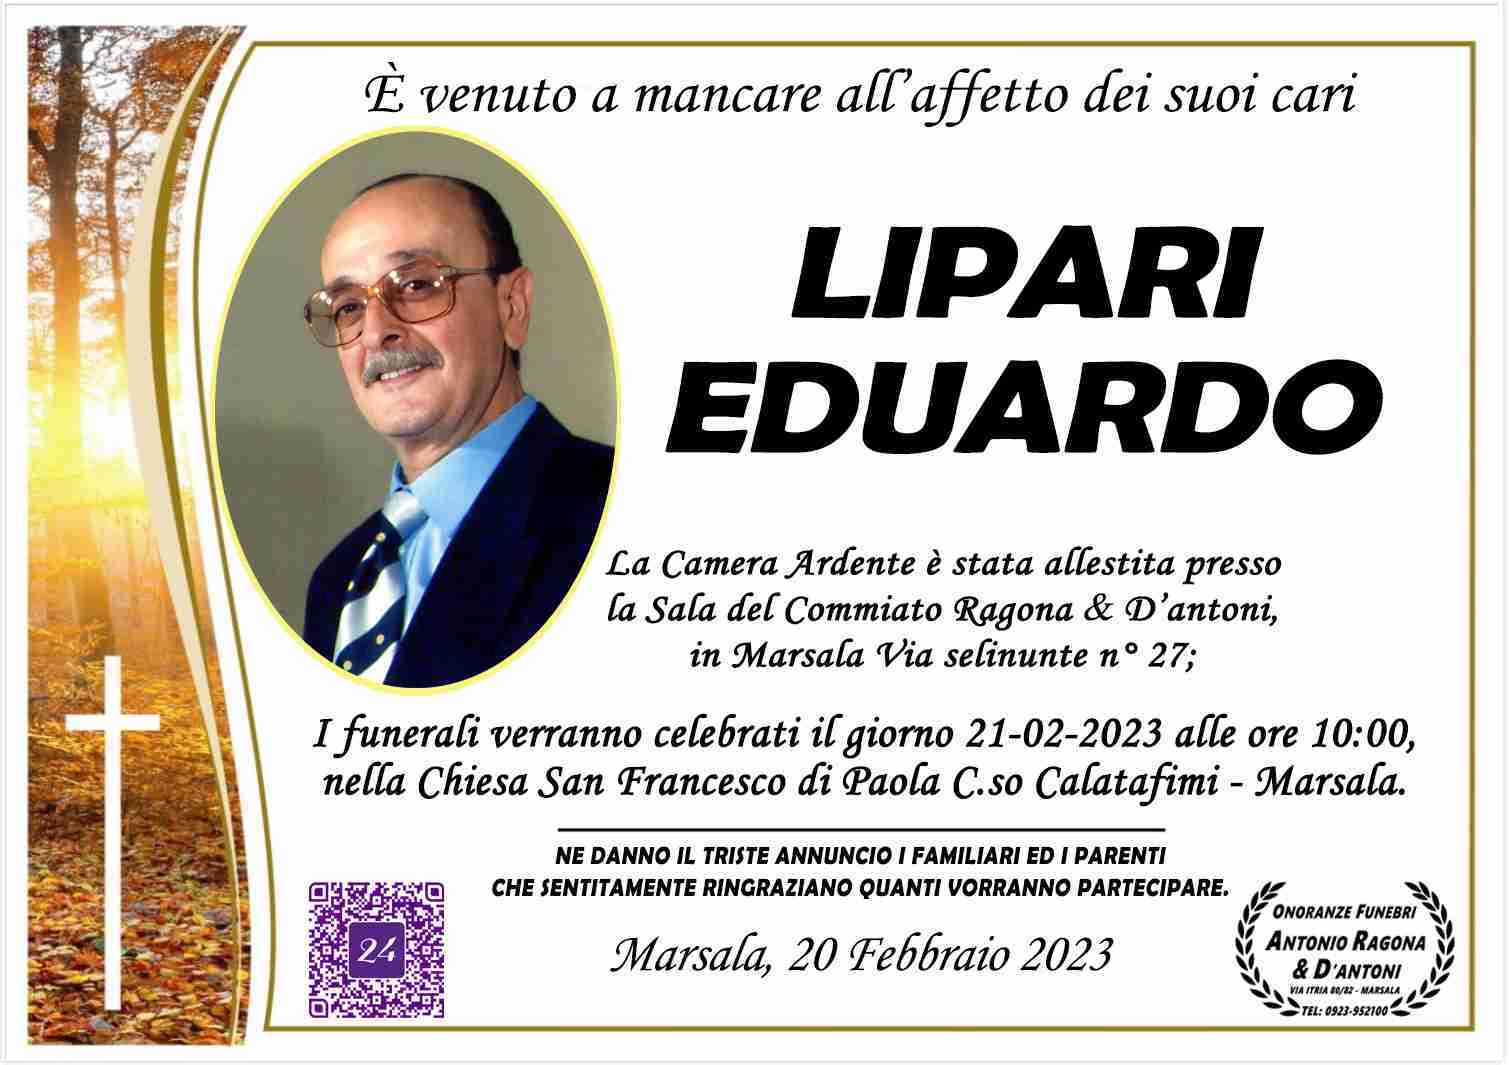 Eduardo Lipari